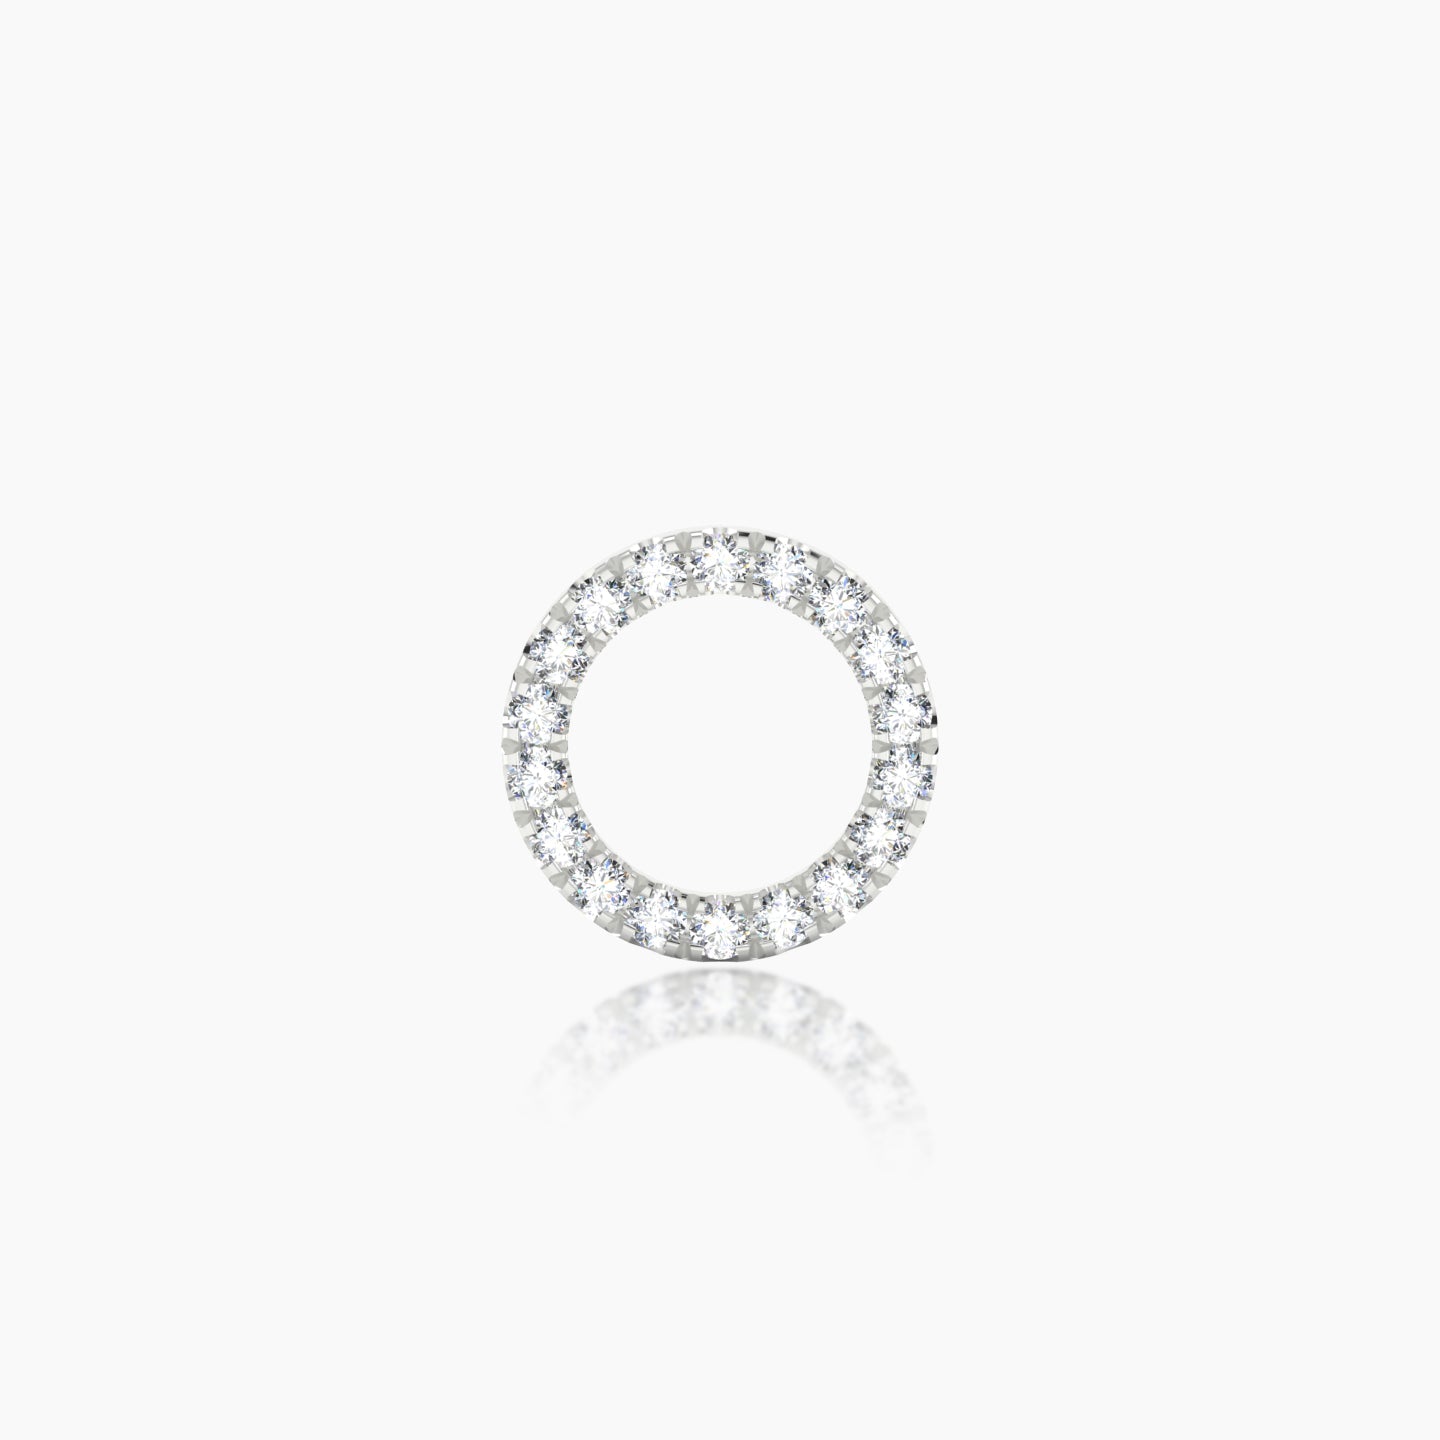 Sulis | 18k White Gold 8 mm Diamond Earring